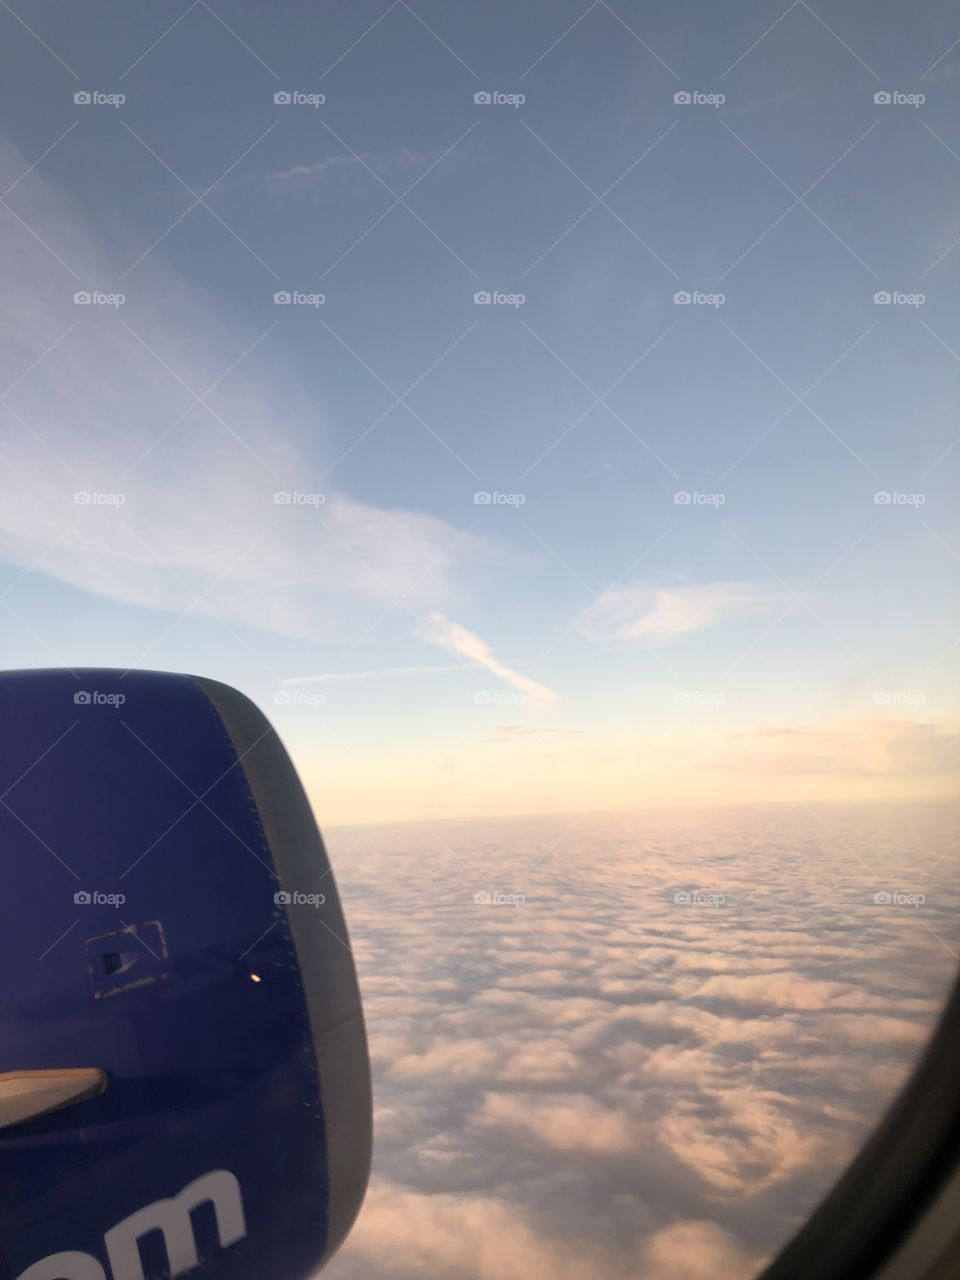 No Person, Airplane, Travel, Sky, Aircraft